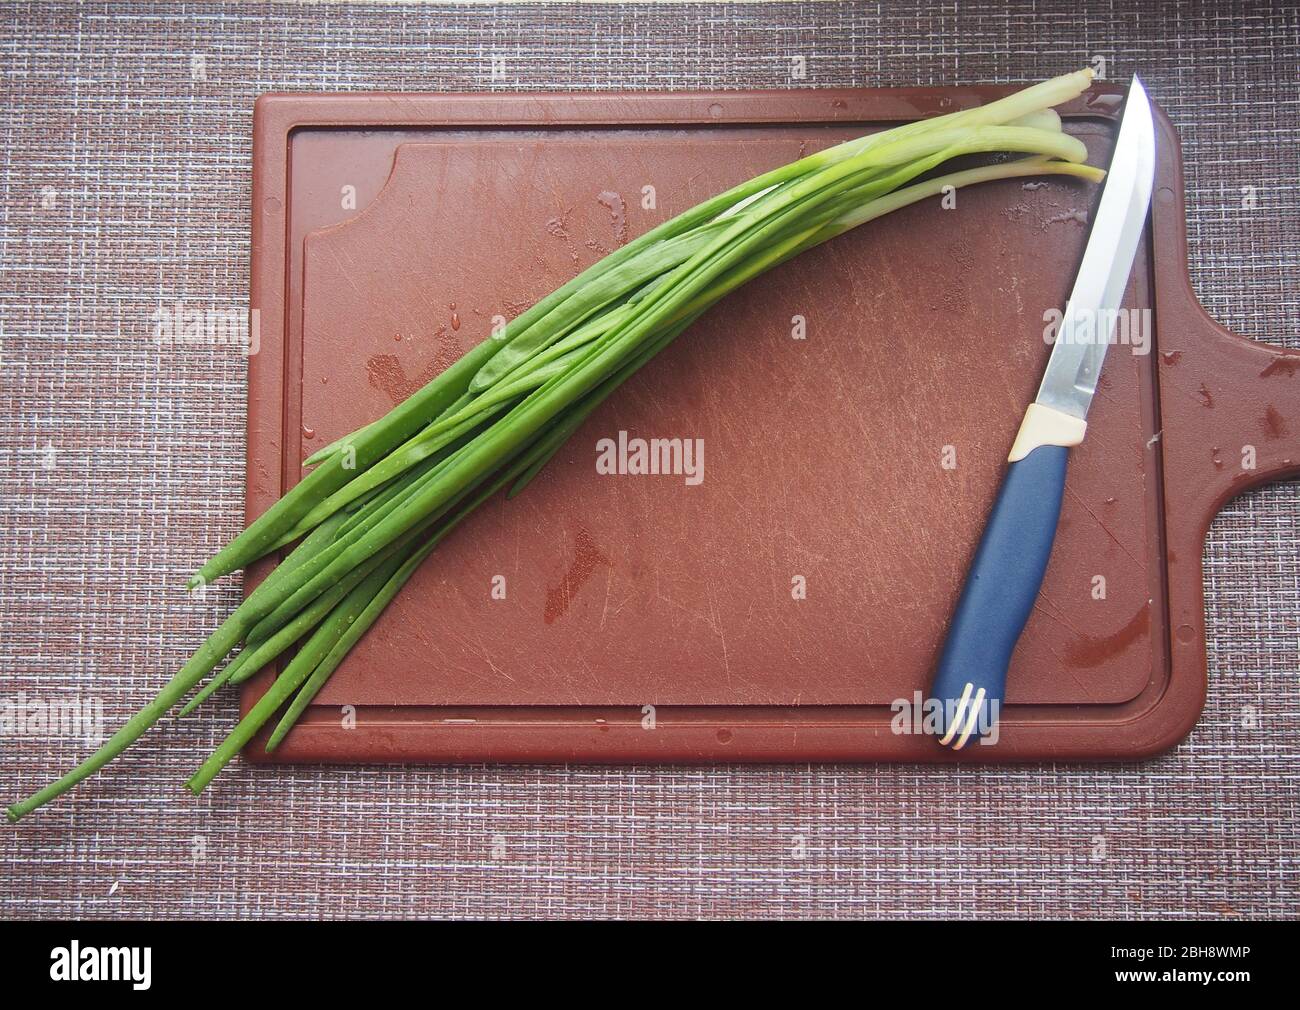 Les feuilles d'oignon et un couteau se trouvent sur une planche à découper en plastique marron. Cuisson. Banque D'Images